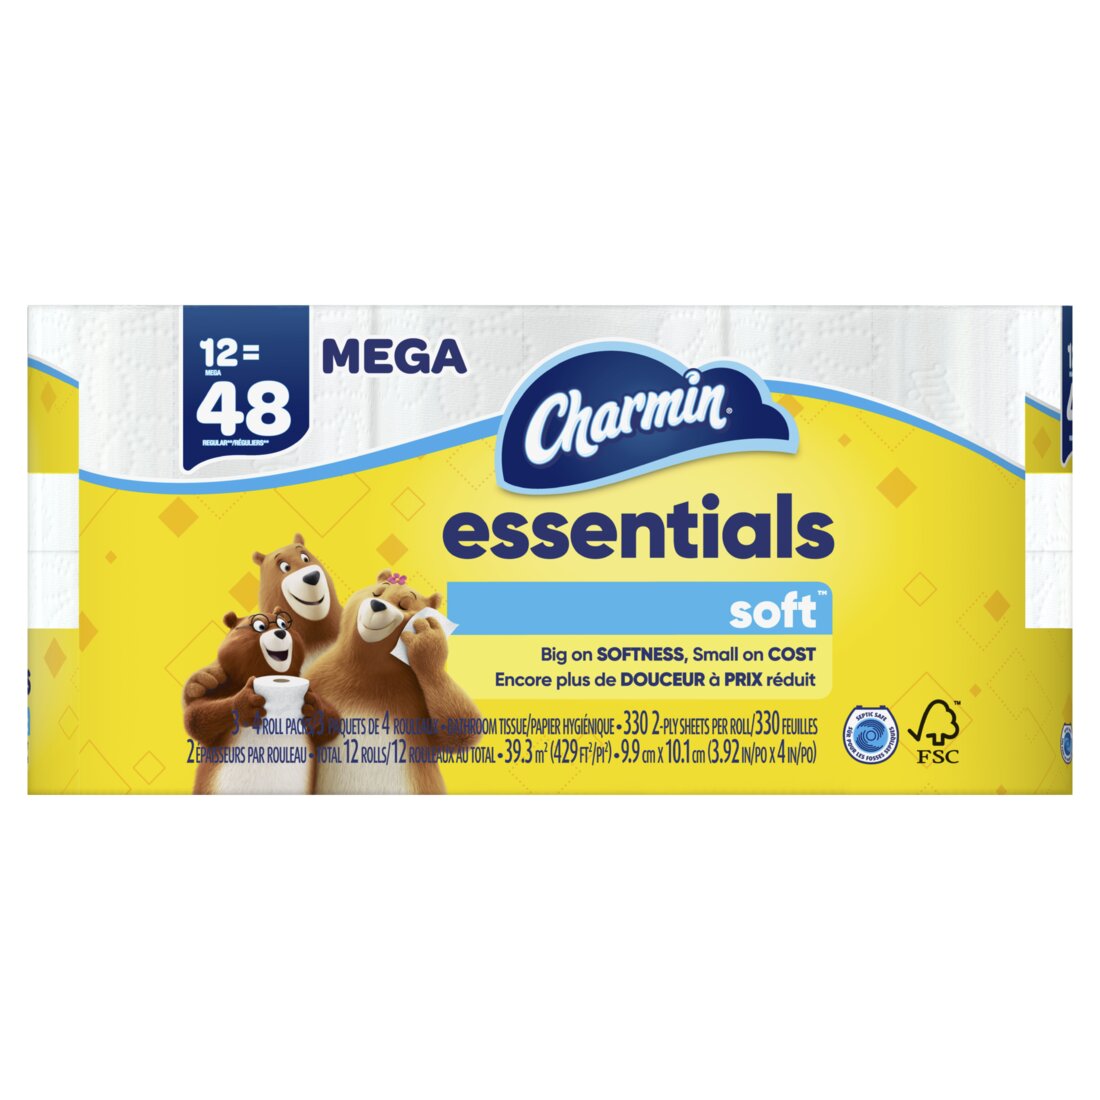 Charmin Essentials Soft Toilet Paper 330 sheets per roll - 12ct/1pk